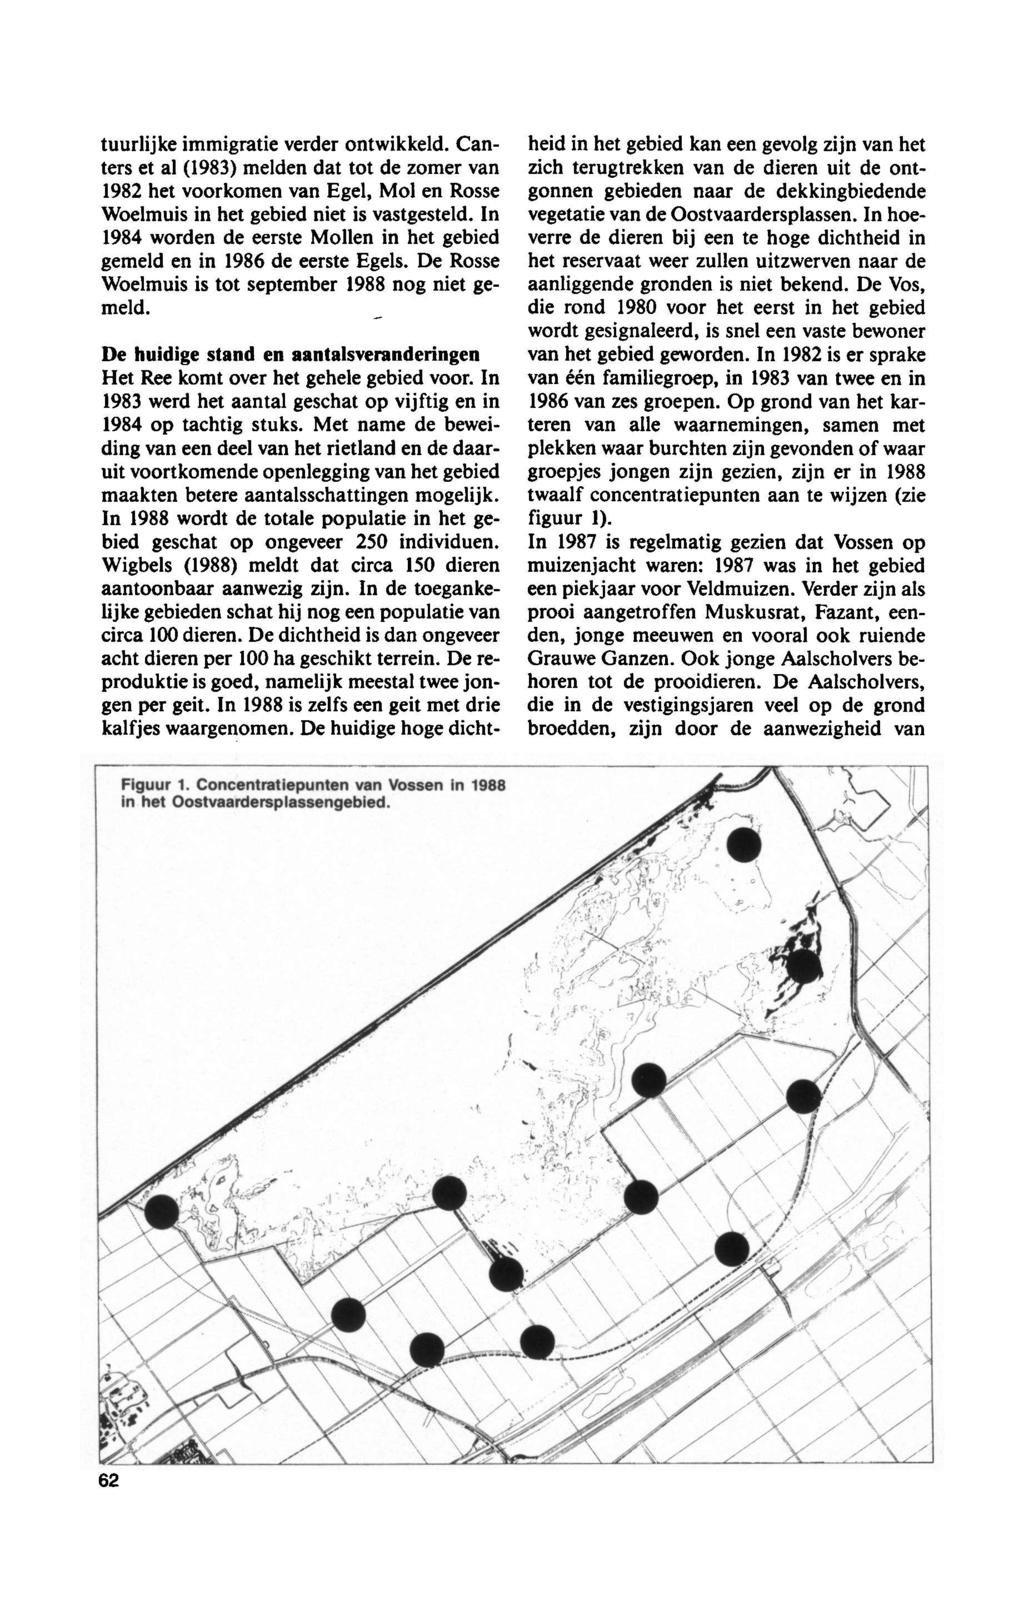 tuurlijke immigratie verr ontwikkeld. Canters et al (1983) meld dat tot zomer 1982 kom Egel, Mol Rosse Woelmuis gebied niet is vastgesteld. In 1984 word eerste Moll gebied gemeld 1986 eerste Egels.